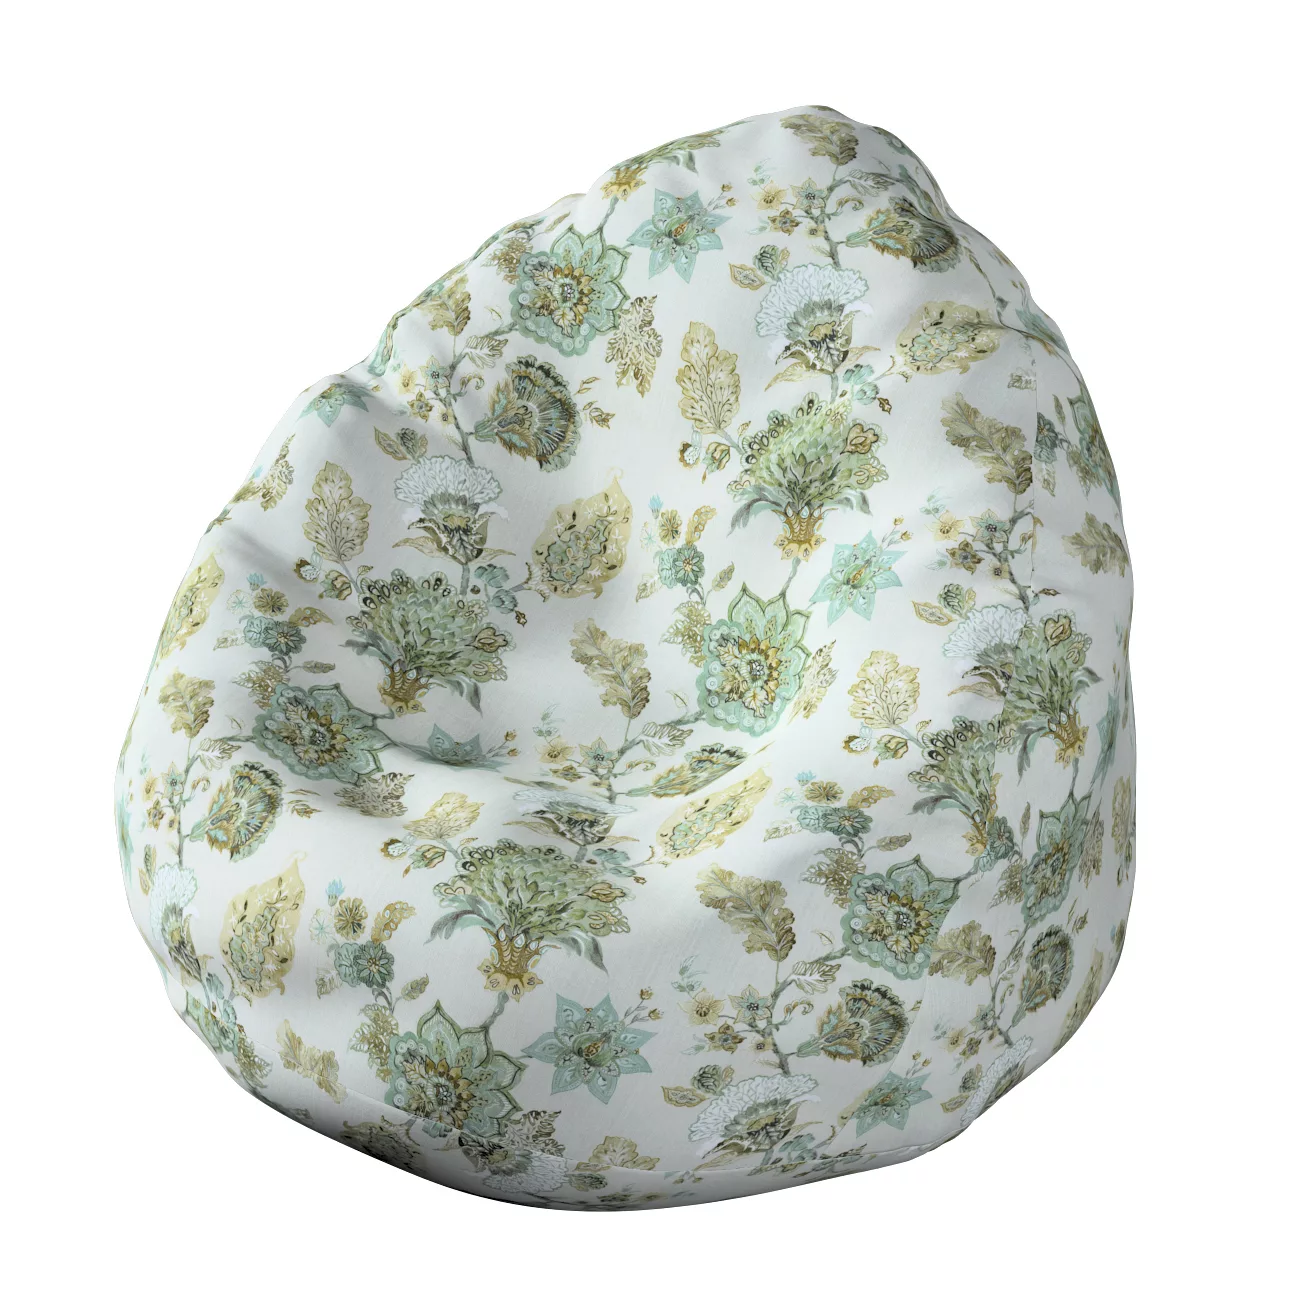 Bezug für Sitzsack, grau-beige, Bezug für Sitzsack Ø80 x 115 cm, Flowers (1 günstig online kaufen